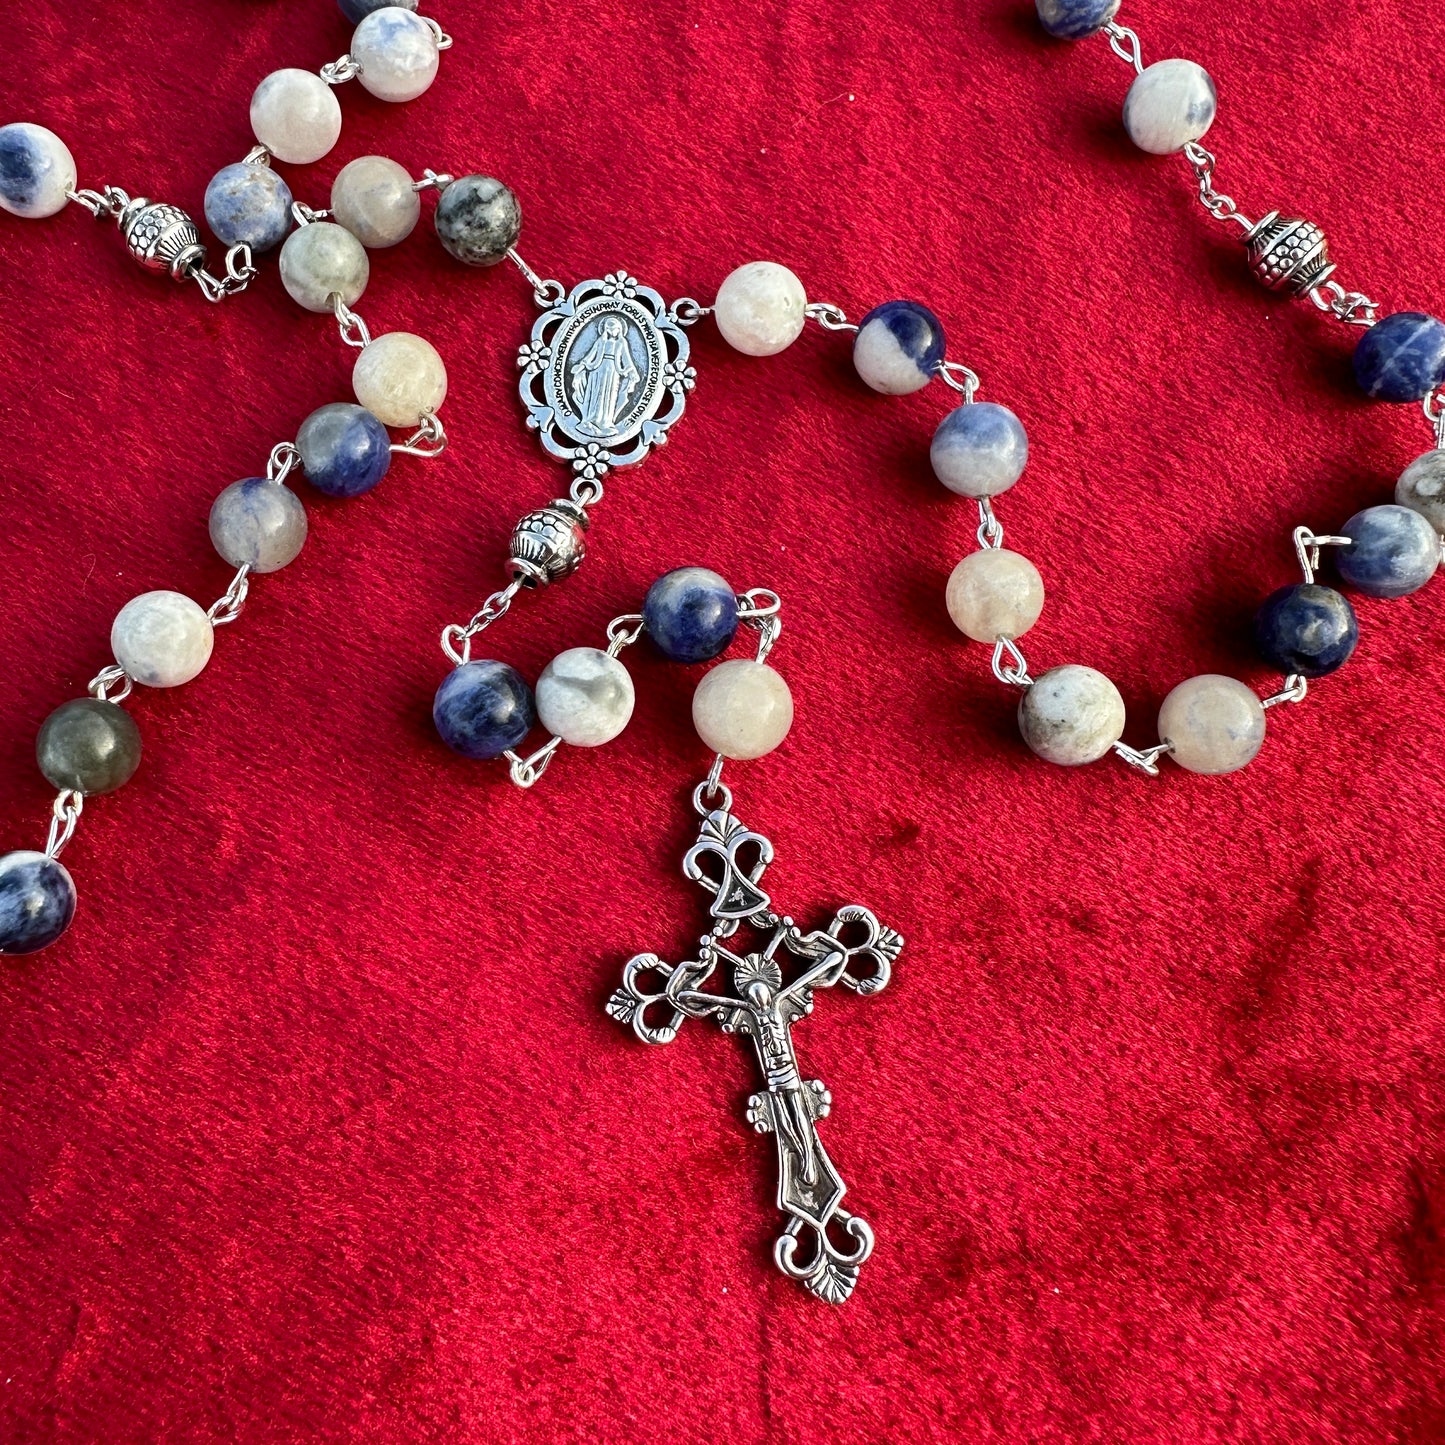 Rosary Traditional Catholic beads white blue